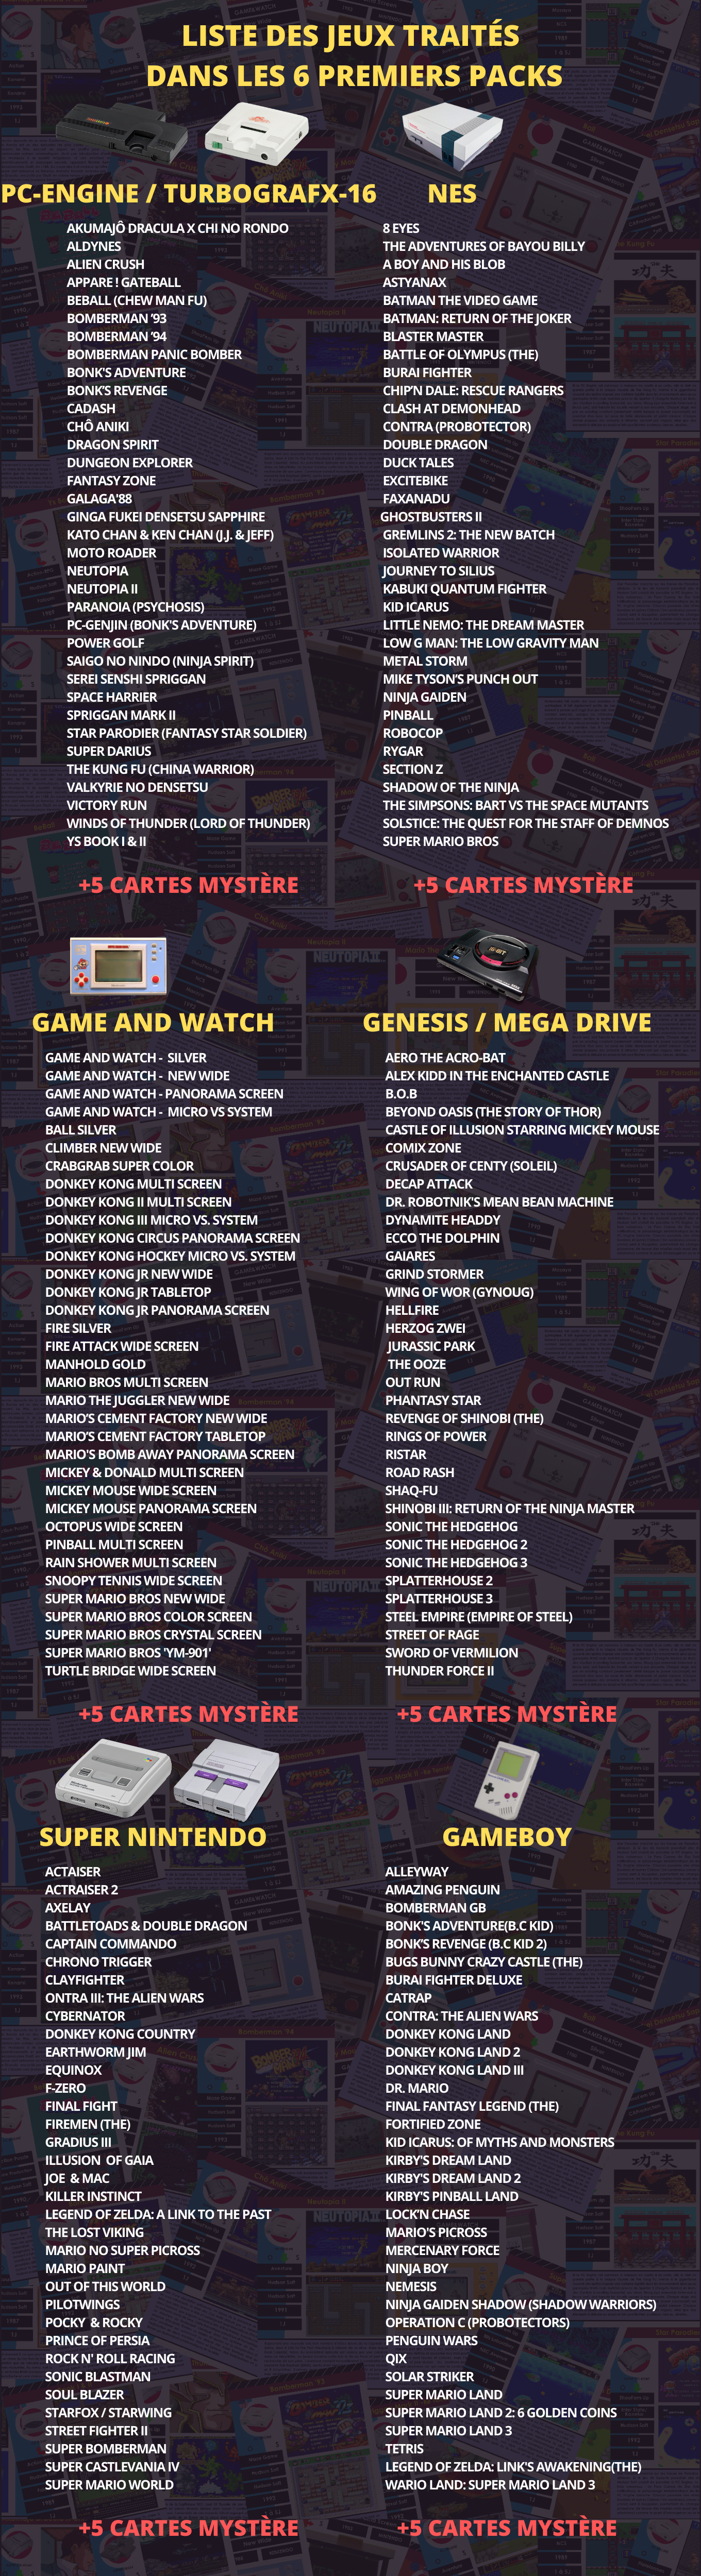 Liste des jeux traités dans les 6 premiers apcks de l'encyclopédie du jeu vidéo